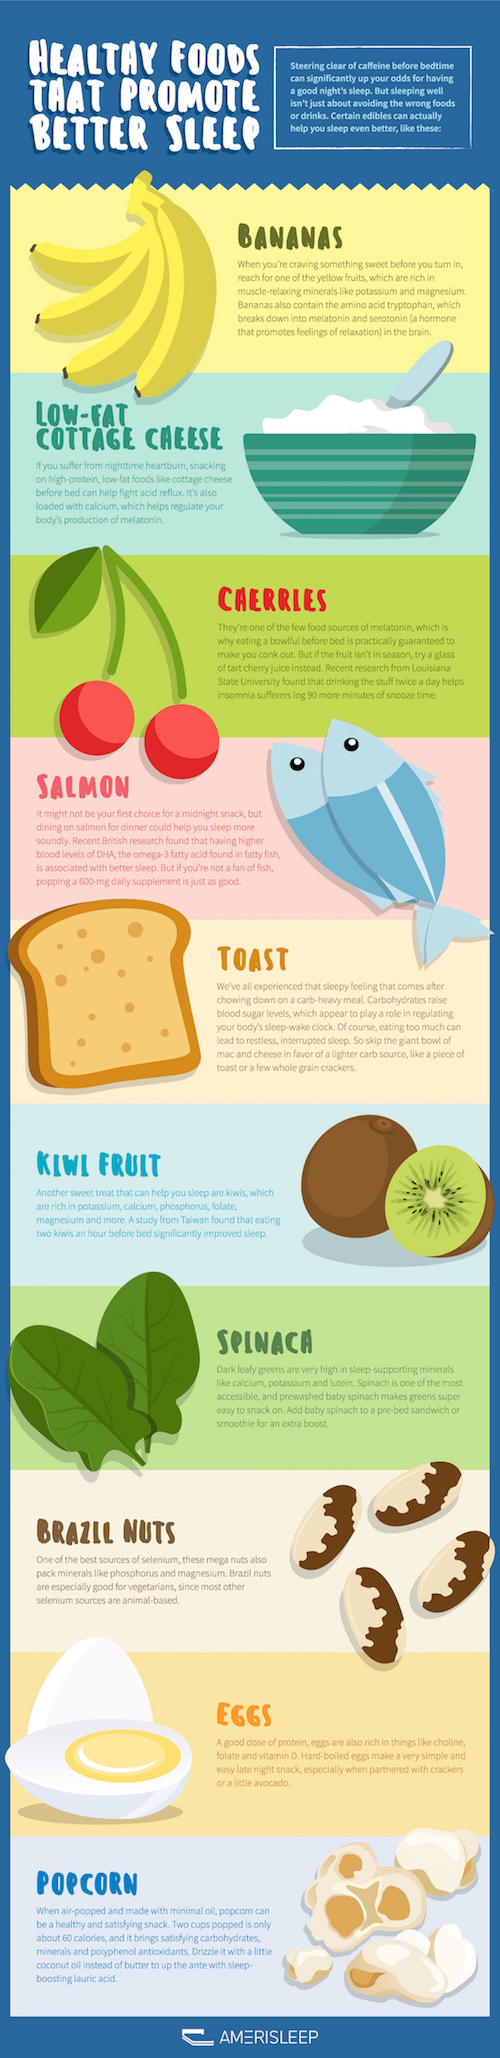 healthy foods that help promote sleep